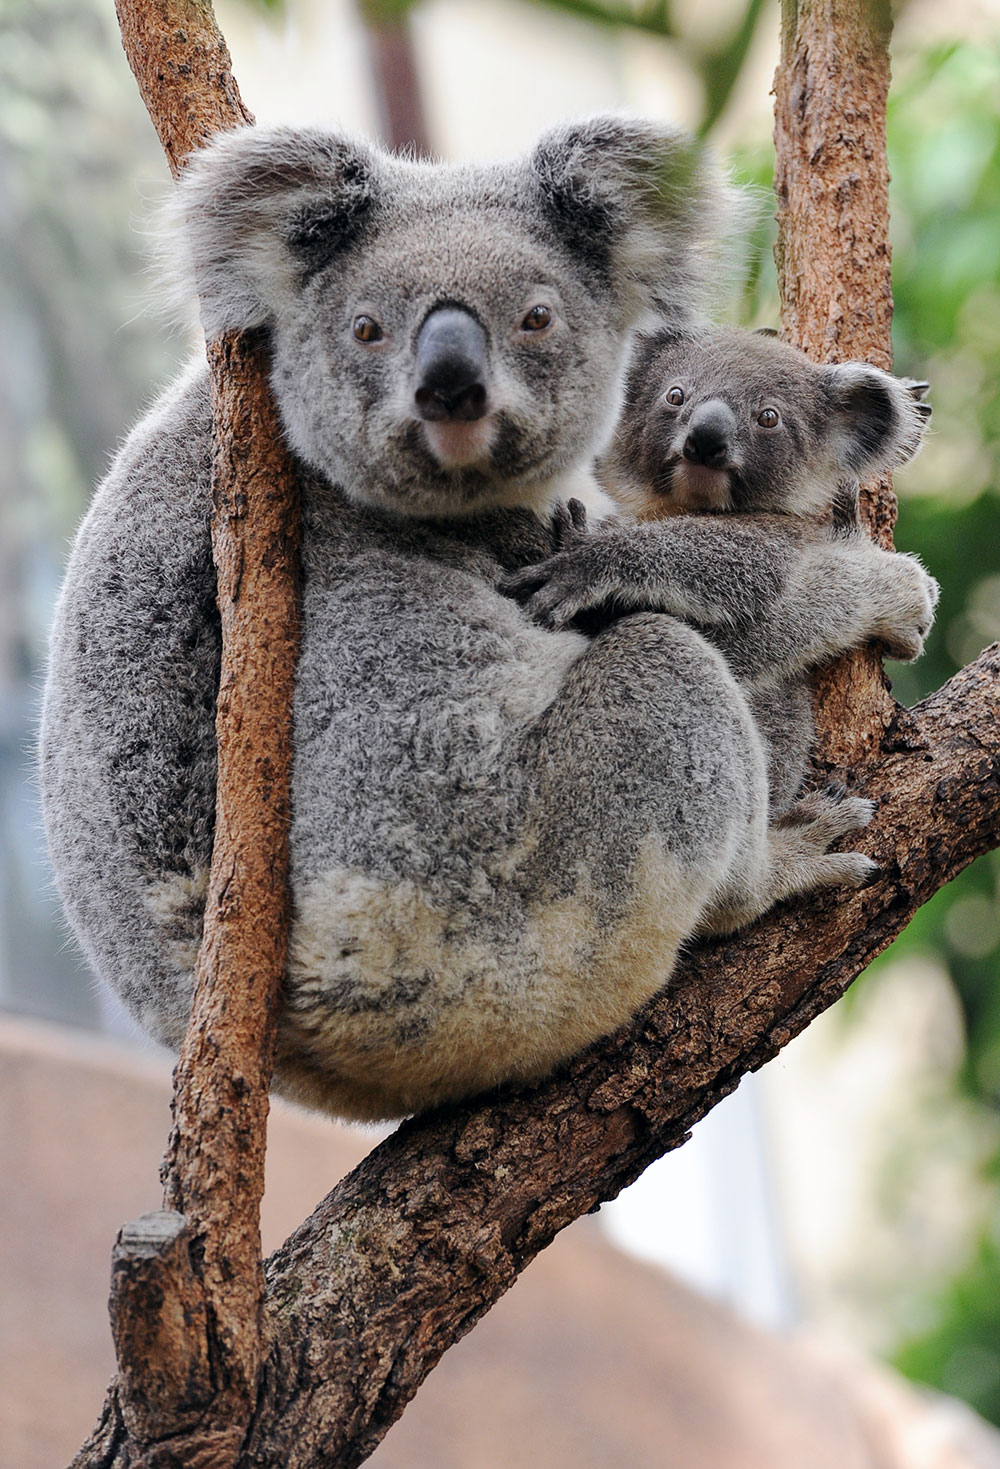 Australie: des centaines de koalas auraient péri dans un incendie